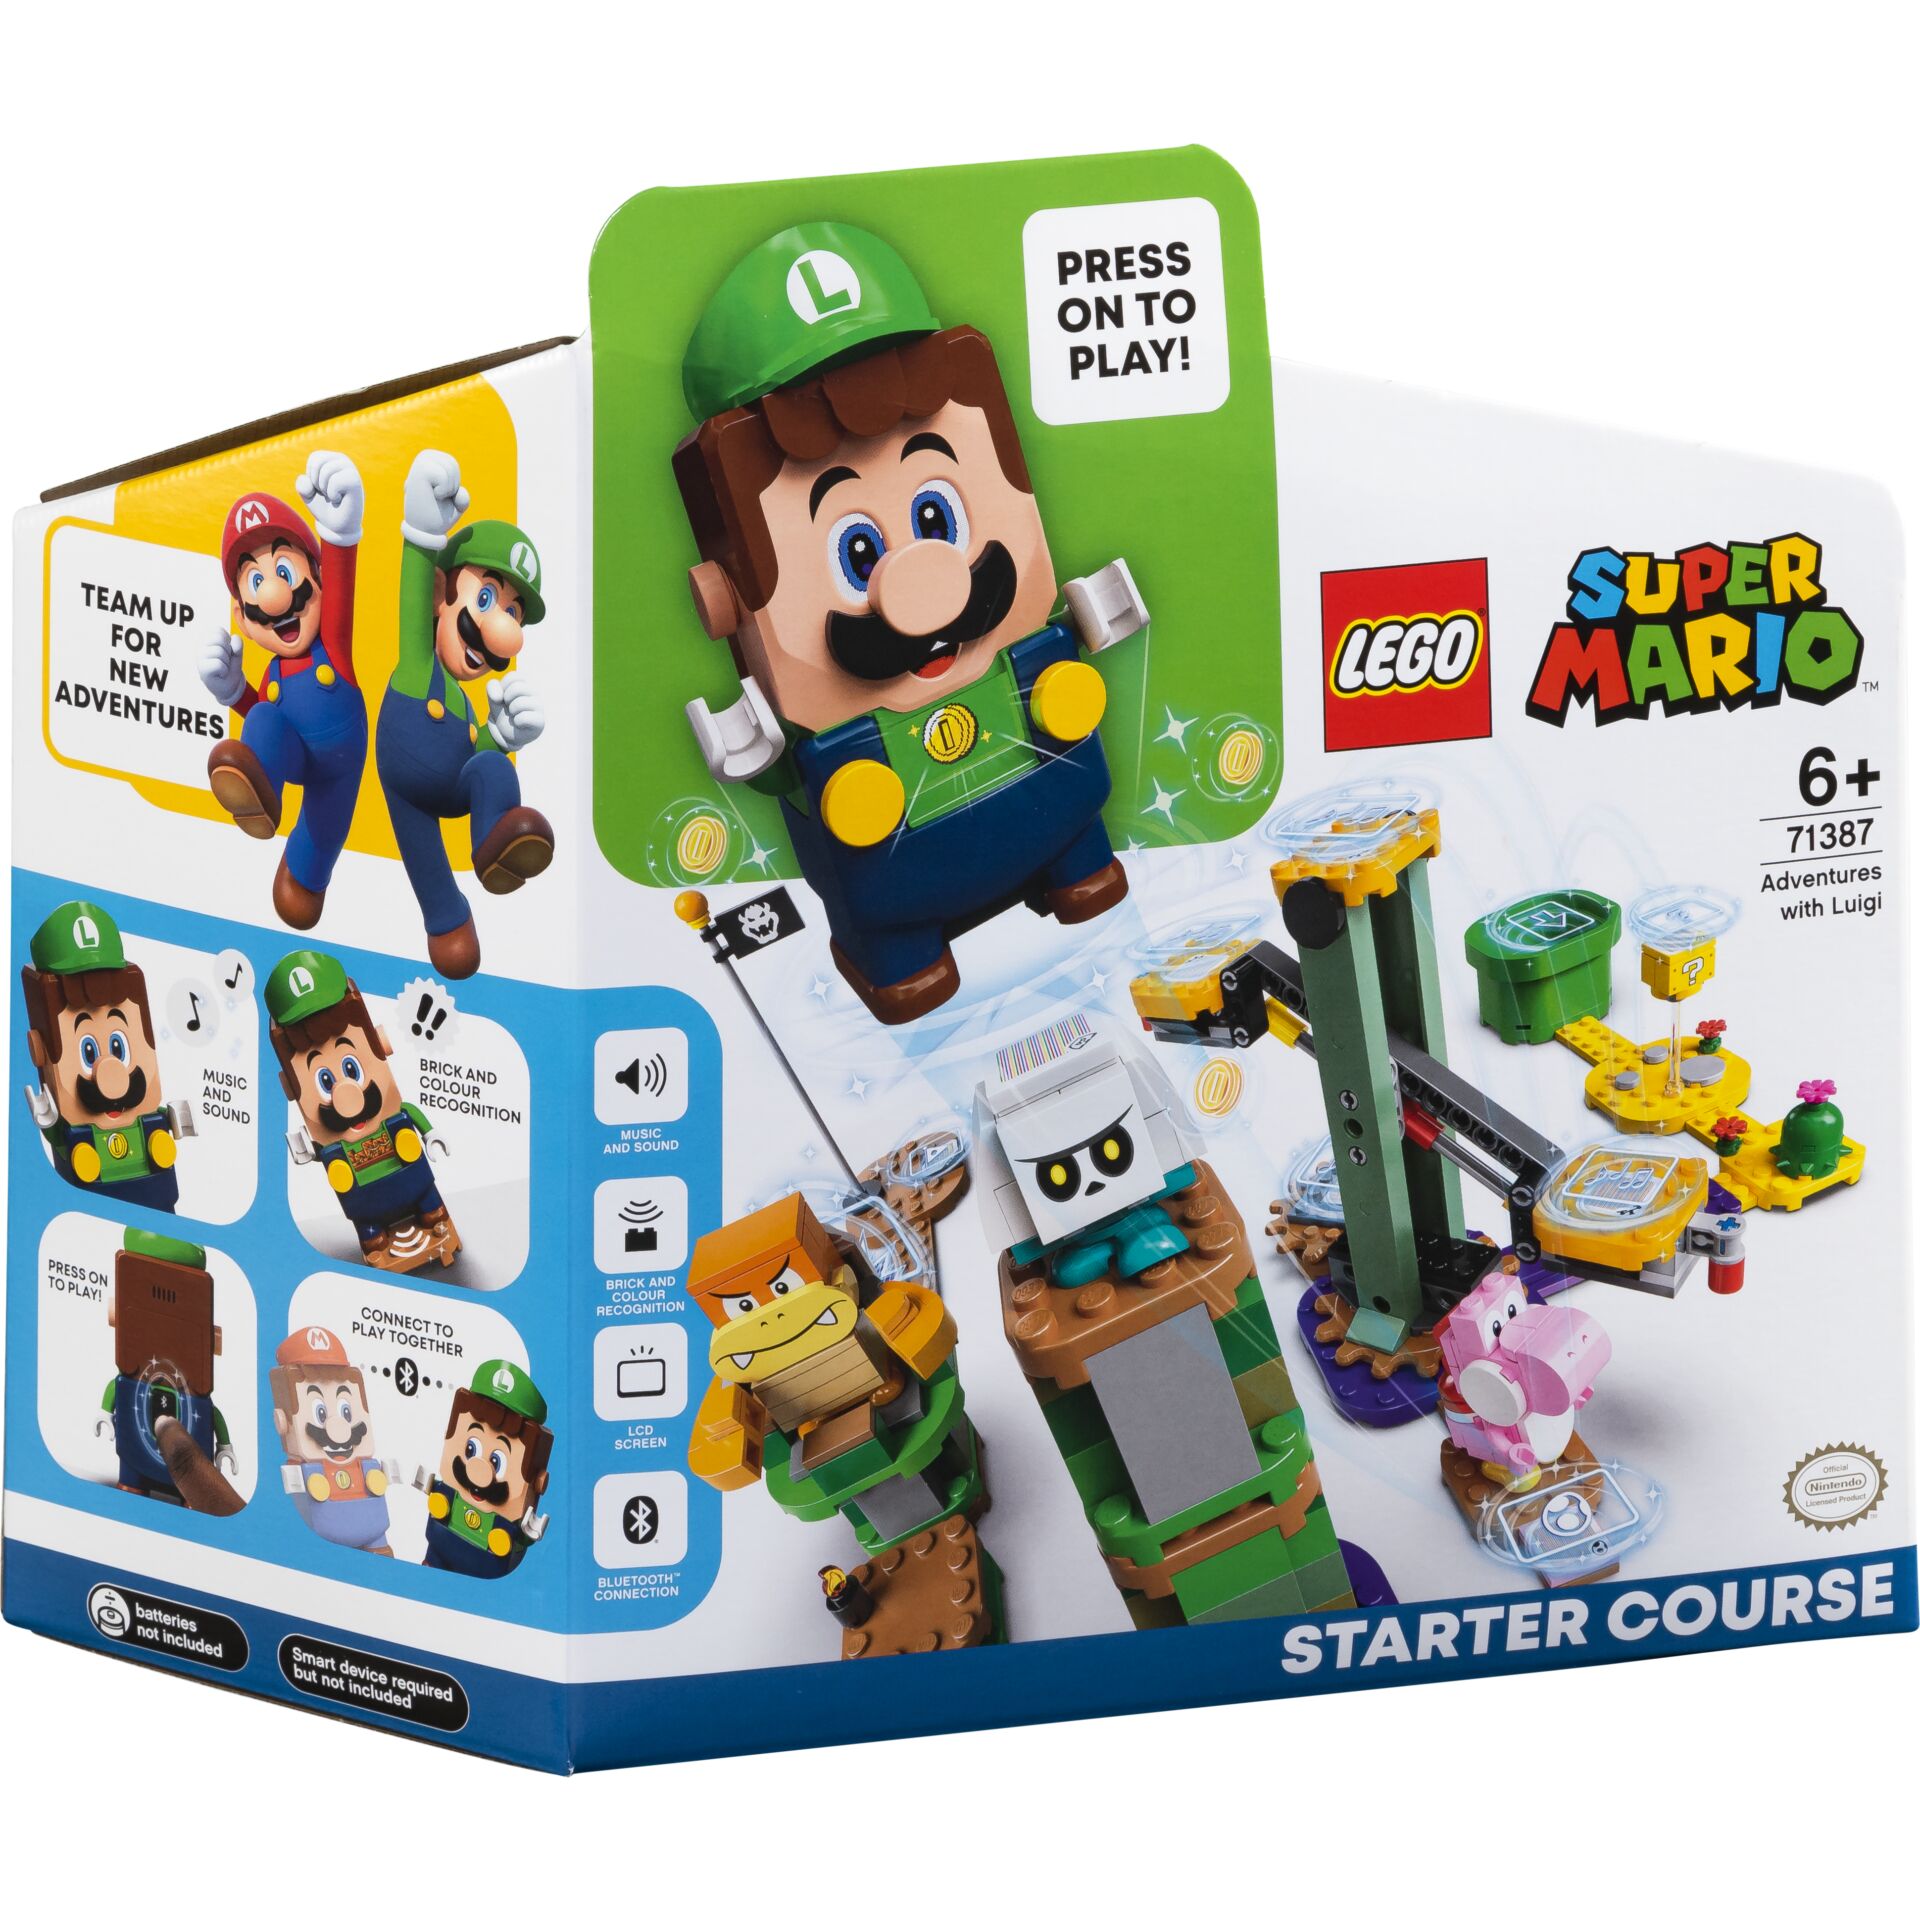 Starterset mit Lego -Lego 71387 | Toys/Spielzeug Luigi Abenteuer -S.M.